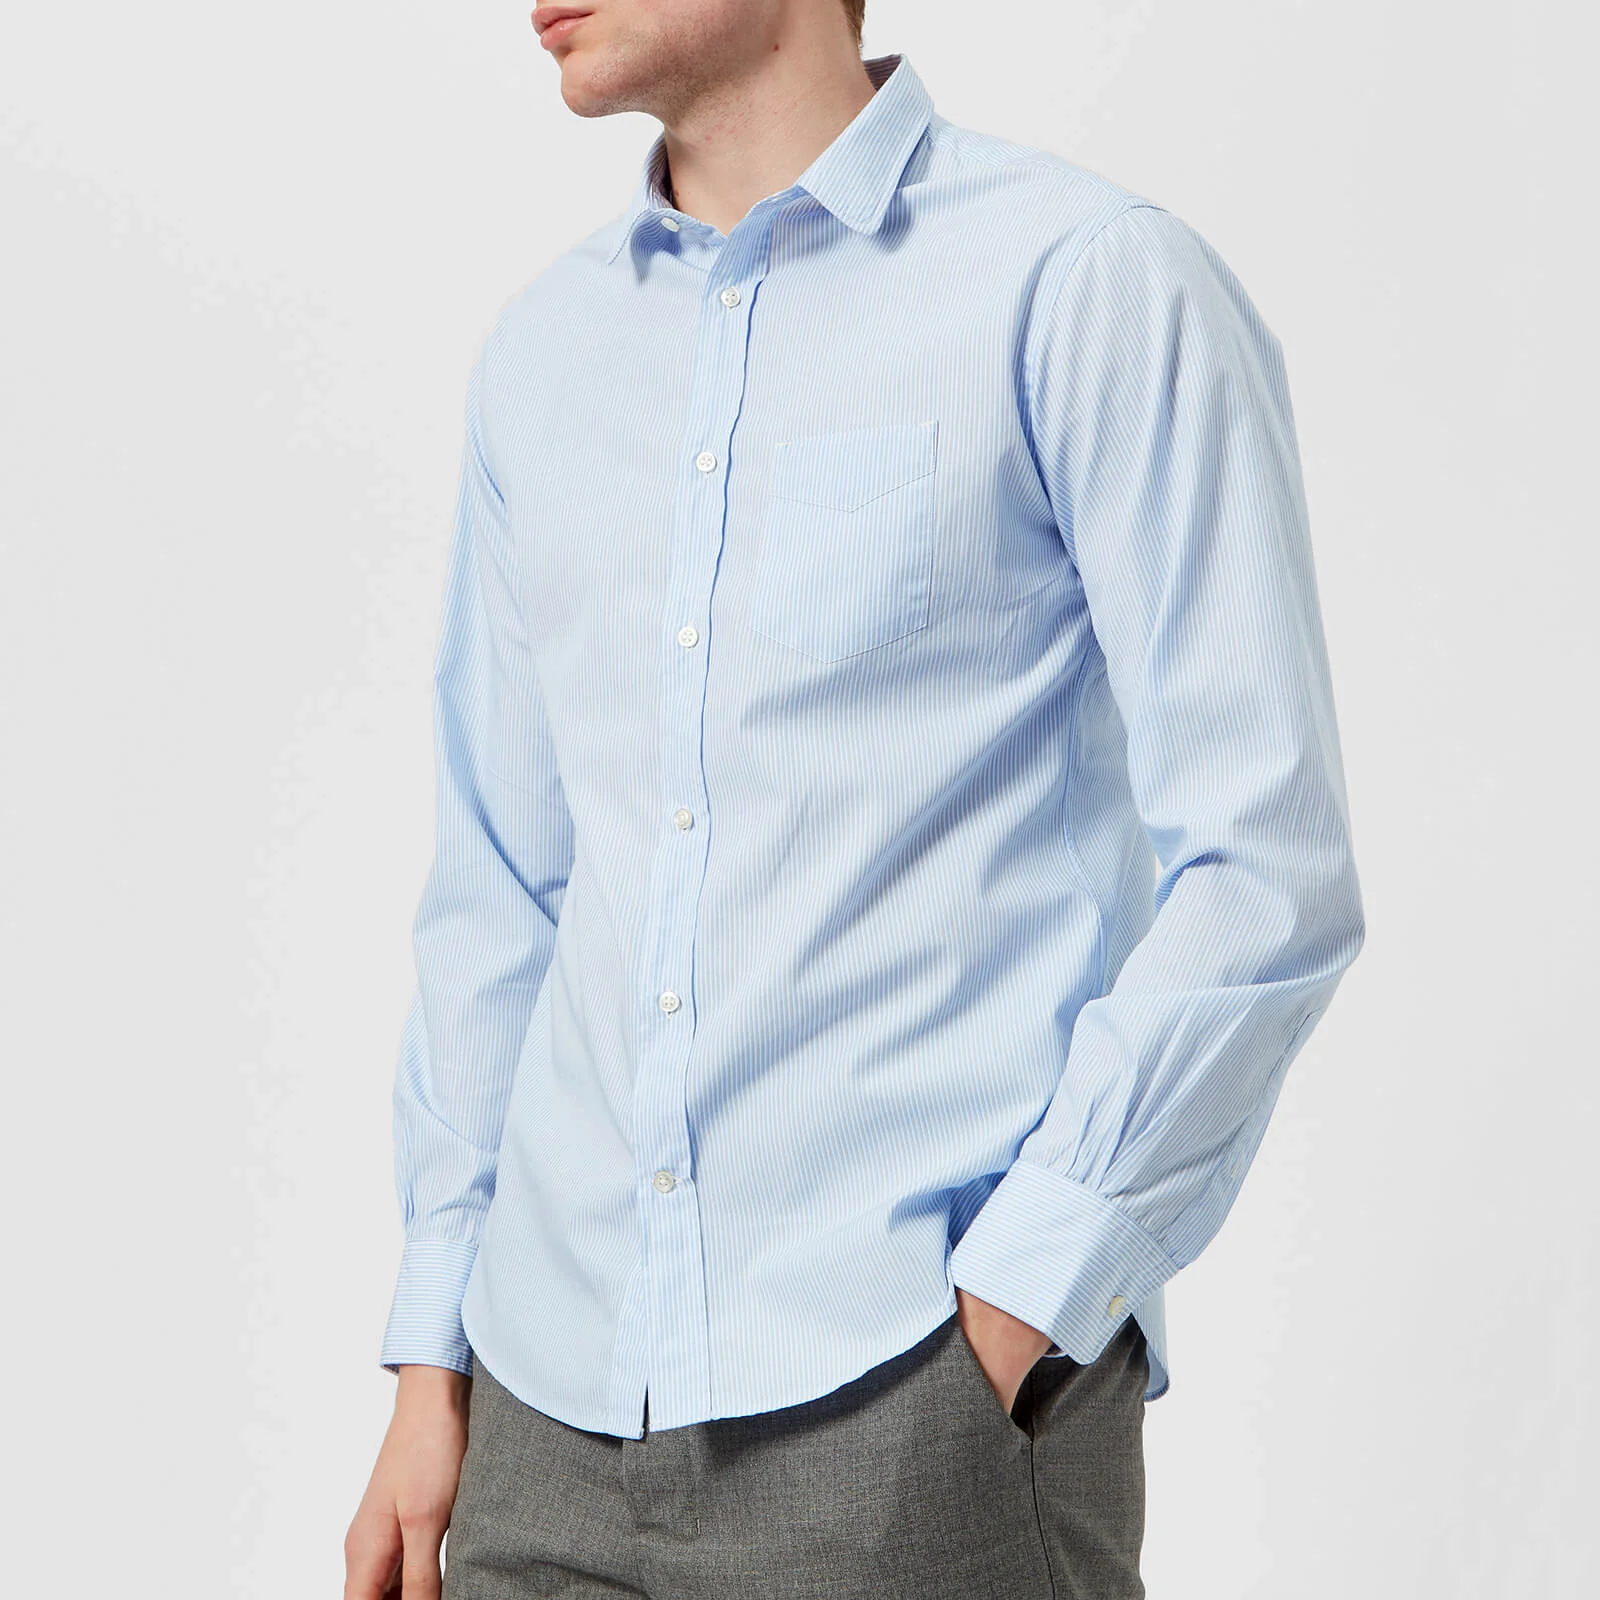 Officine Générale Men's Lipp Striped Cotton Shirt - Blue White Image 1